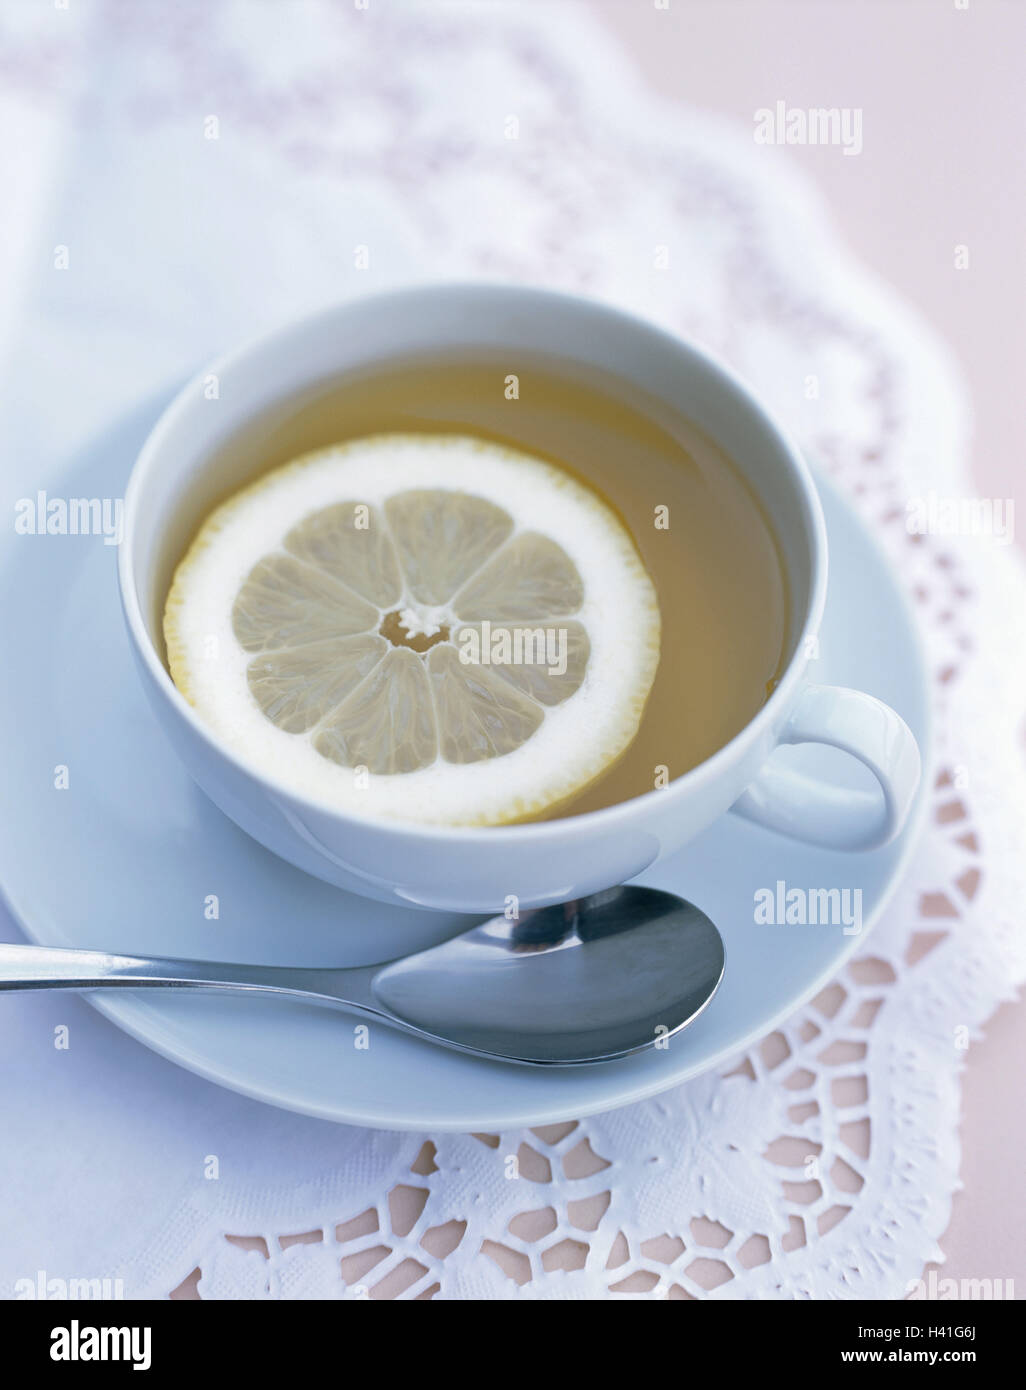 Tazzina, tè, fetta di limone, still life, mangiare, bere una bevanda calda, coppa, piattino cucchiaio e cucchiaino, limone tè al limone, salute Teatime Foto Stock